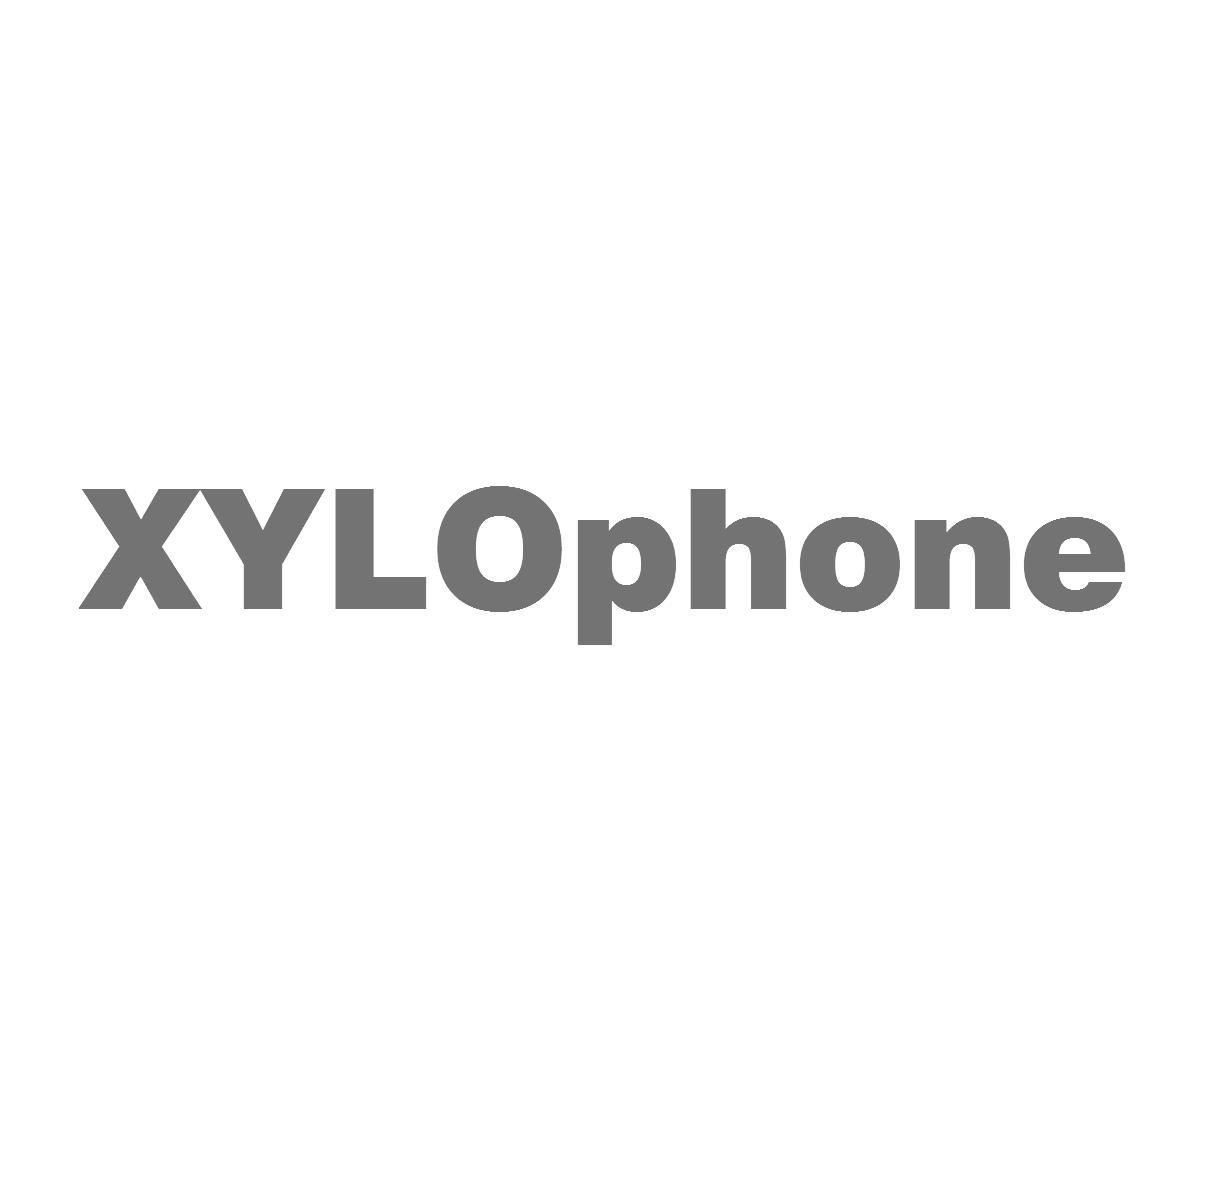 XYLOPHONE